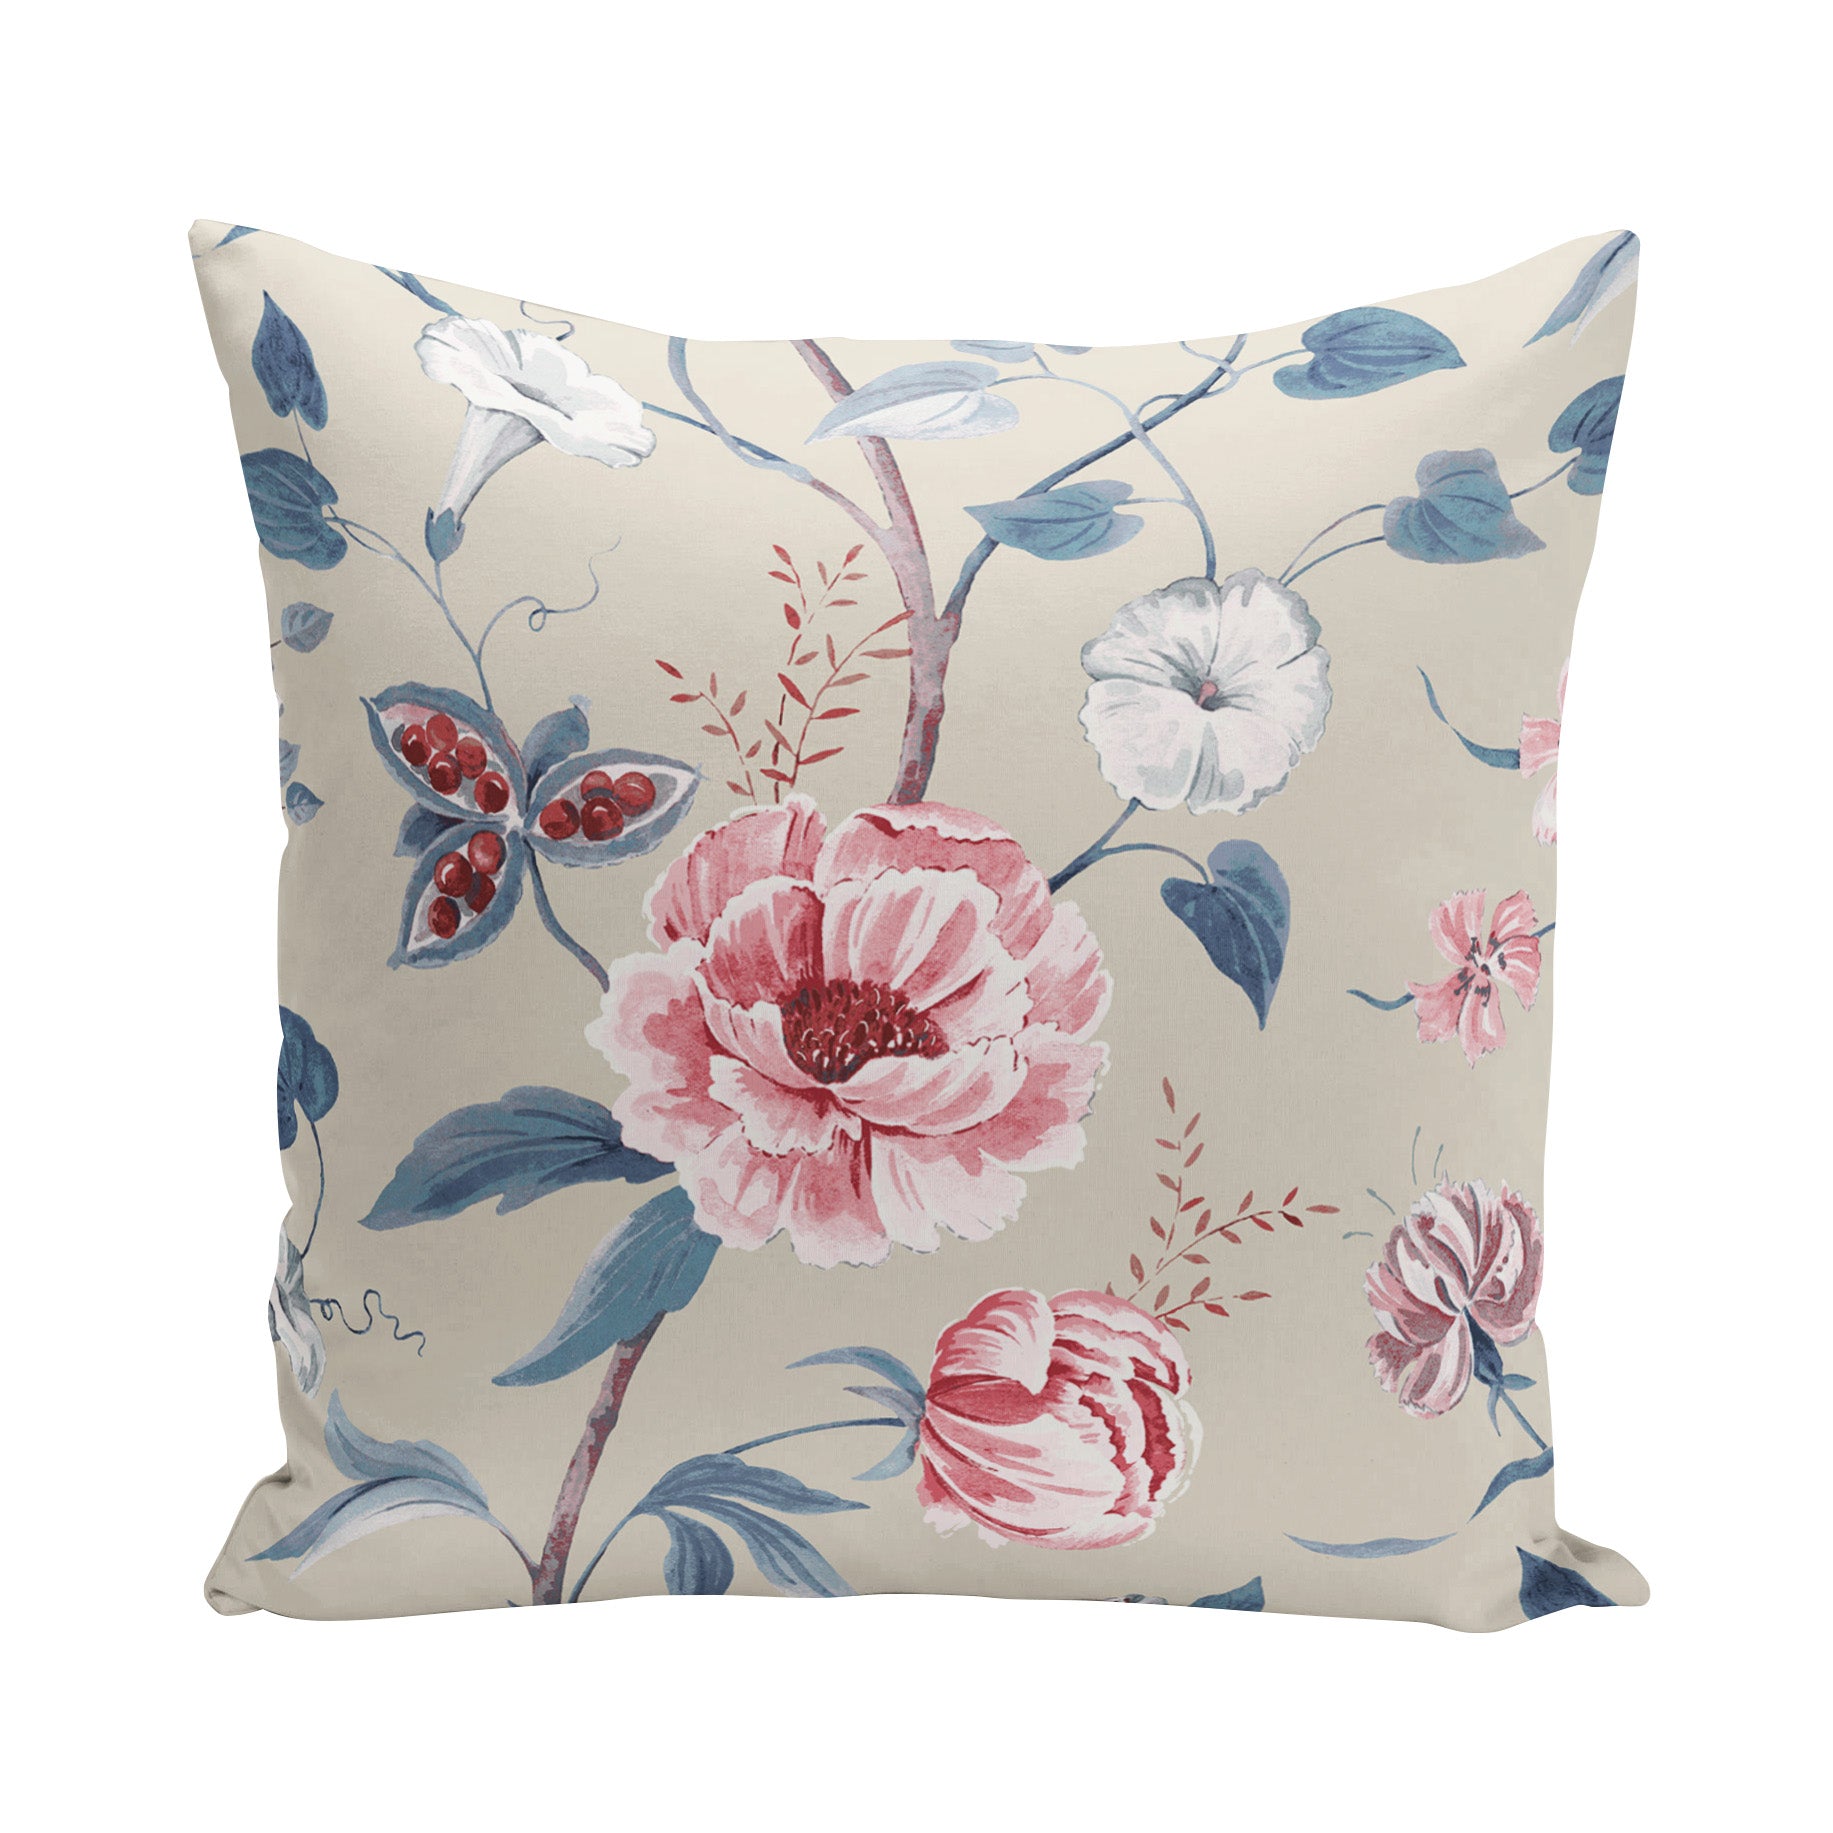 Patterned Linen Cushions | Meg Morton Fabrics